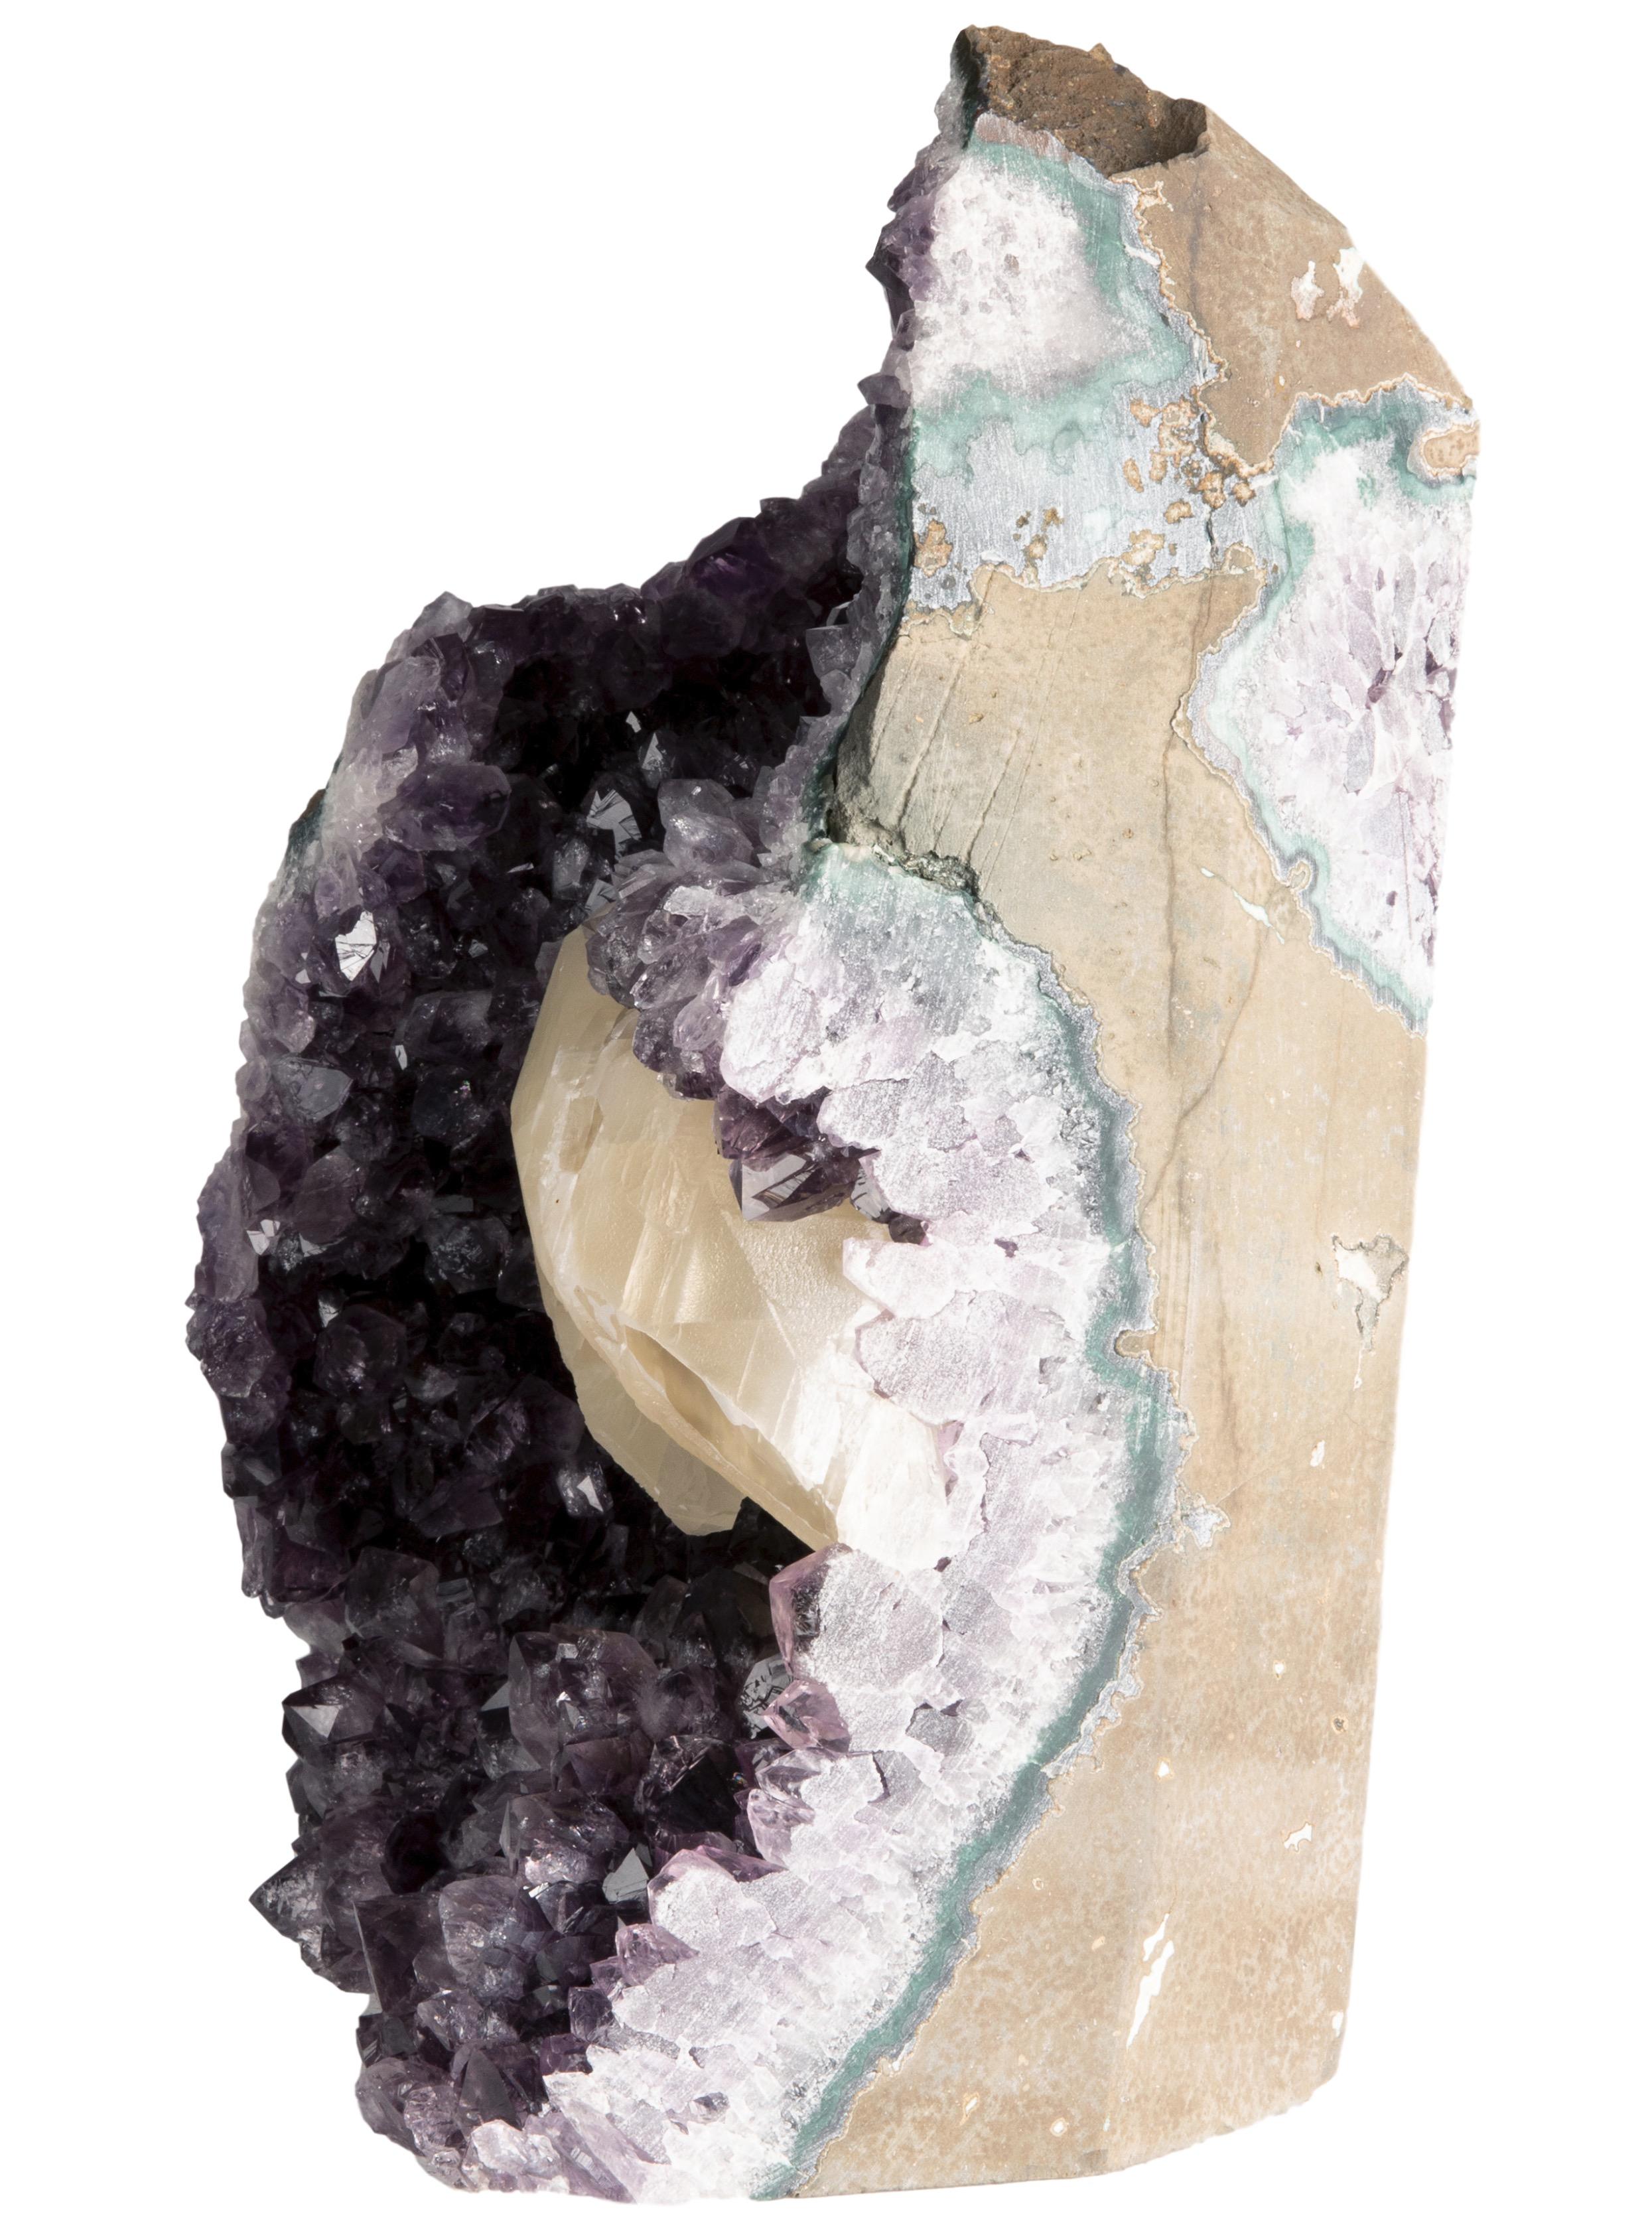 Dans cette pièce, la riche coloration violette de l'améthyste brute est brillamment percée par la formation de calcite crème mate qui est bordée par une céladonite verte et un quartz blanc, d'une manière typique des formations cristallines